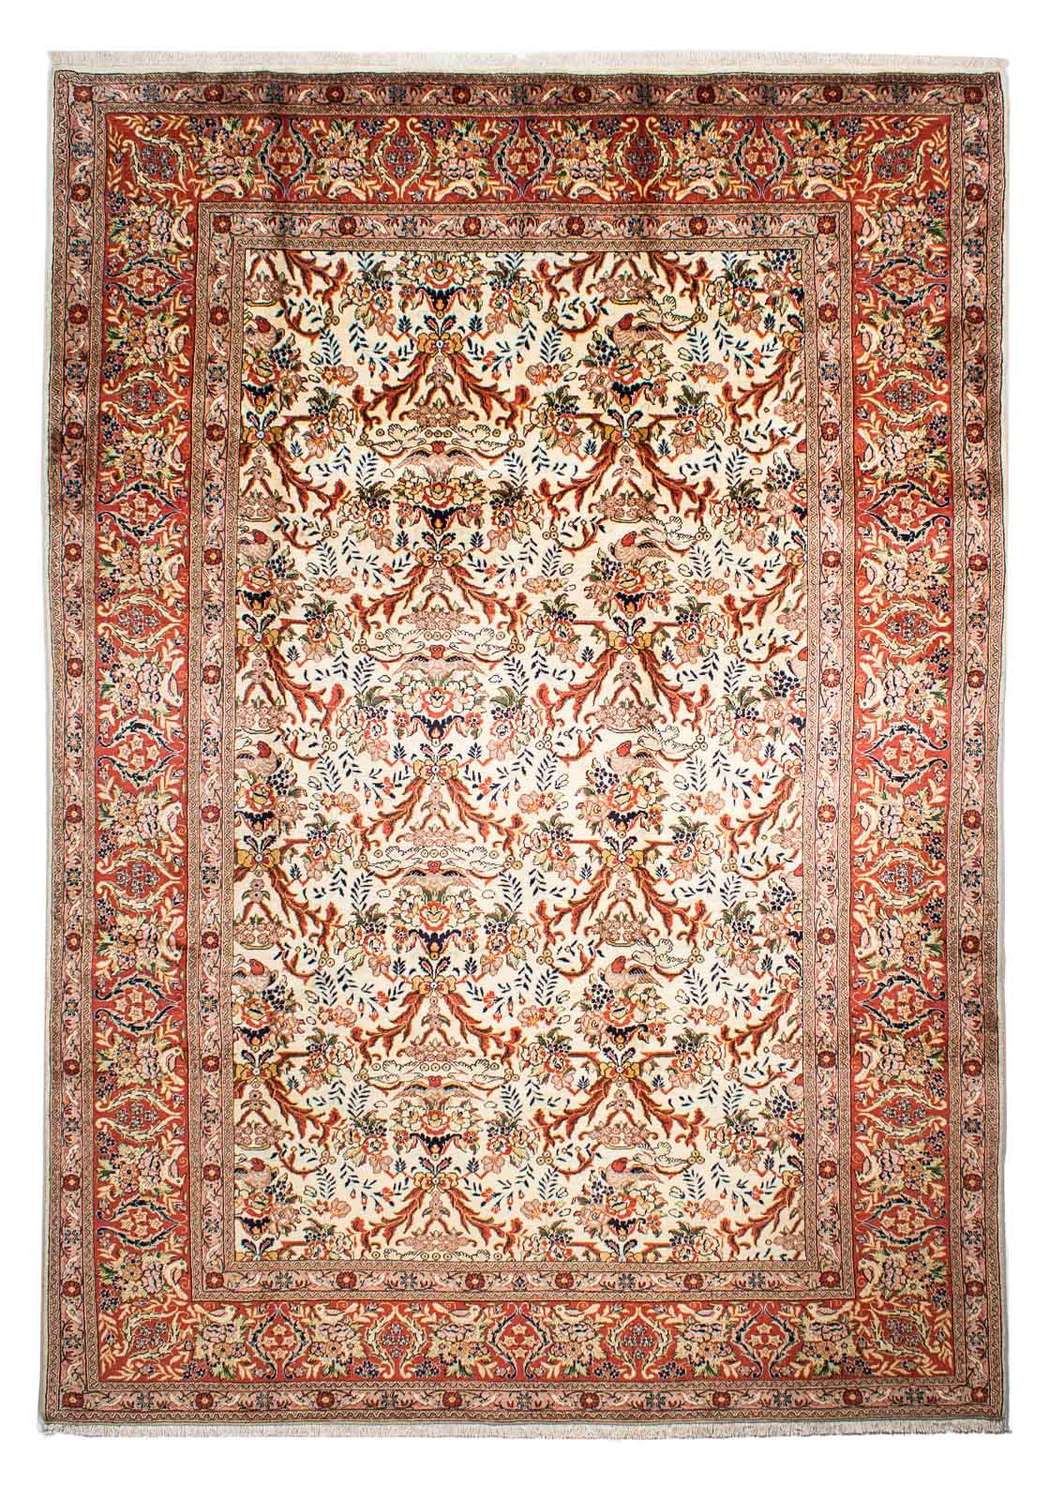 Alfombra persa - Clásica - 306 x 218 cm - beige